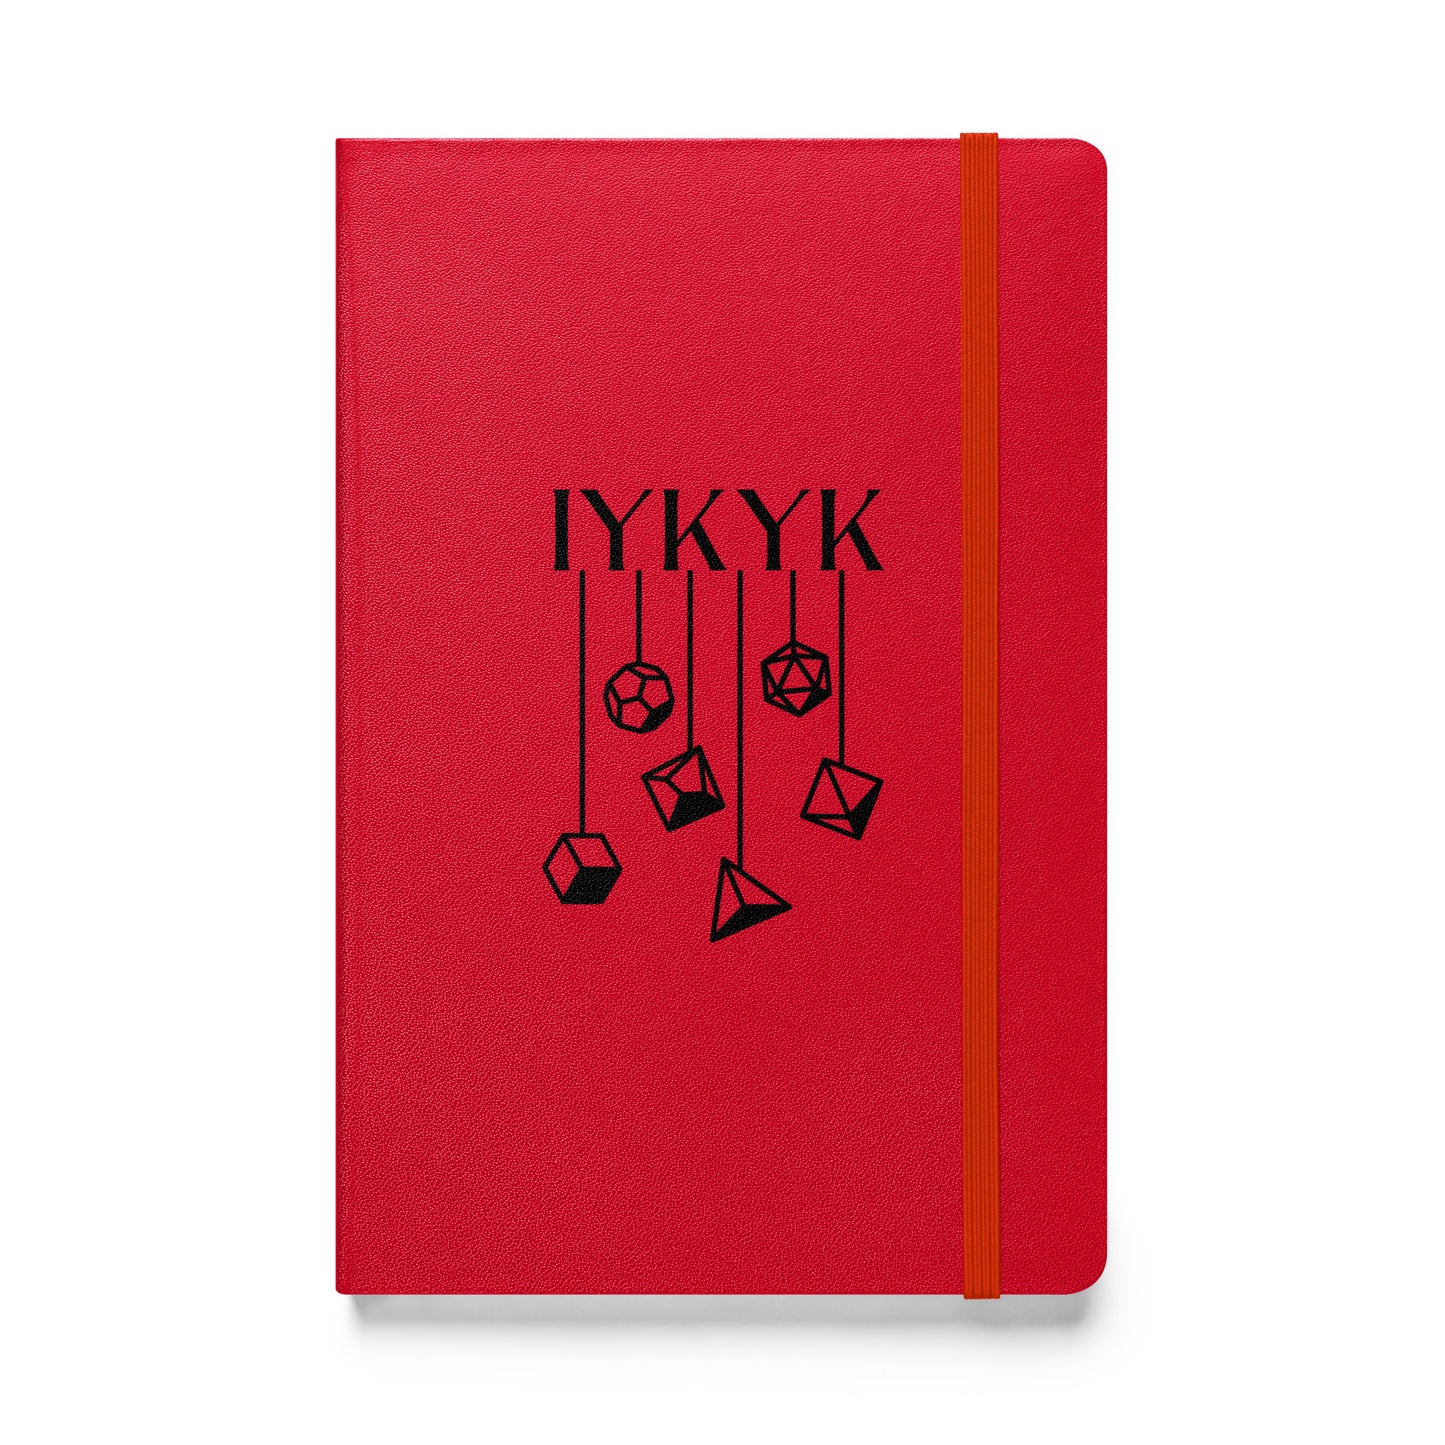 TTRPG Hardcover bound notebook